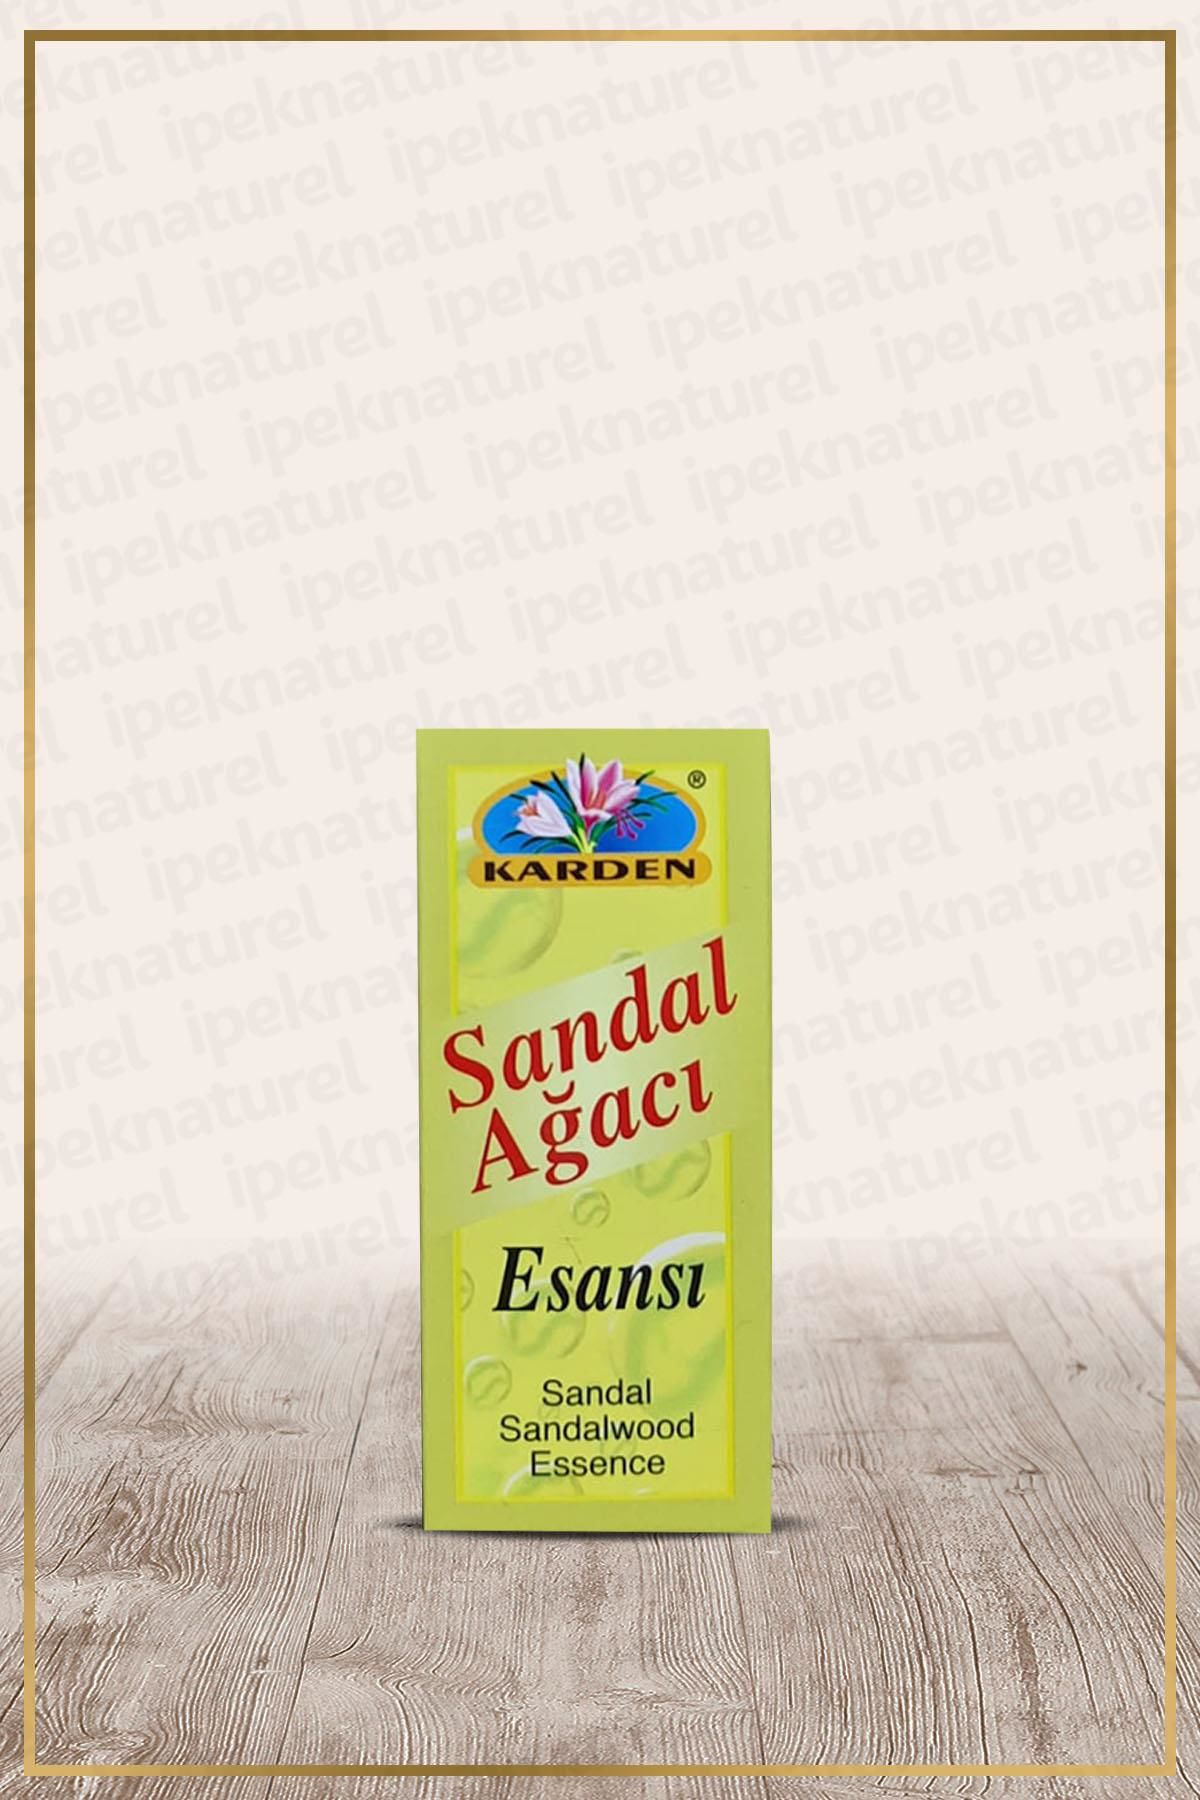 Karden Sandal Ağacı Esansı 20 ml (Sandalwood Essence)